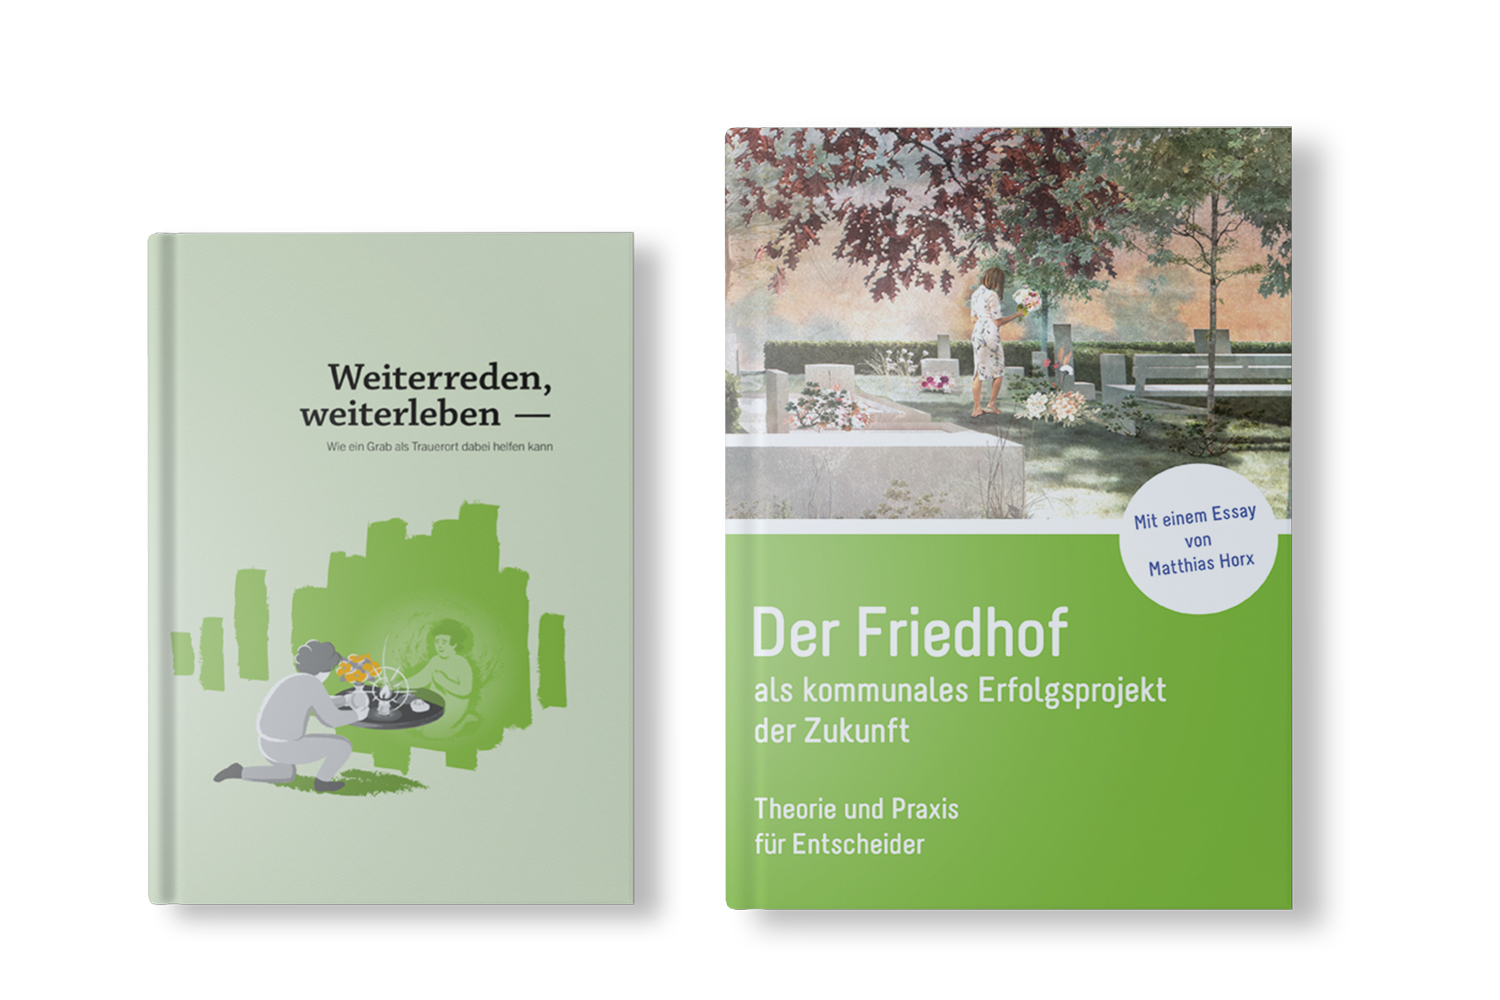 Die beiden Publikationen "Weiterreden, weiterleben" und "Der Friedhof als kommunales Projekt der Zukunft" nebeneinander vor einem weißen Hintergrund platziert